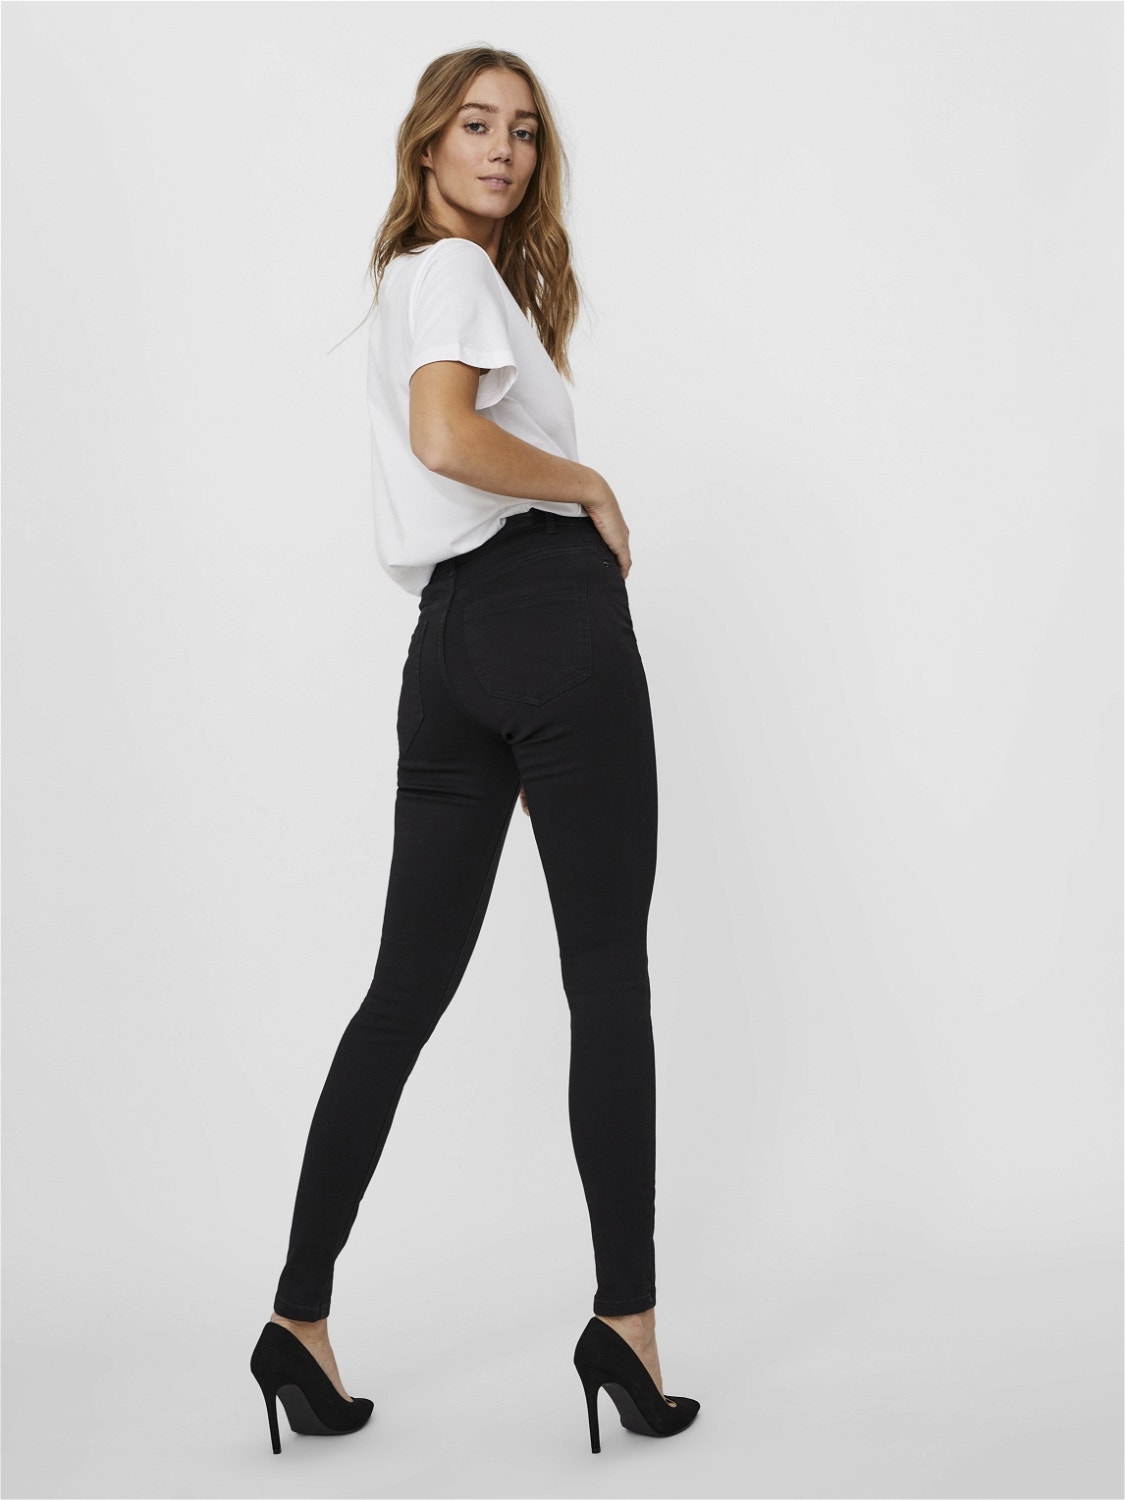 Vero Moda VMSOPHIA Slim Fit Jeans -Black - 10209215